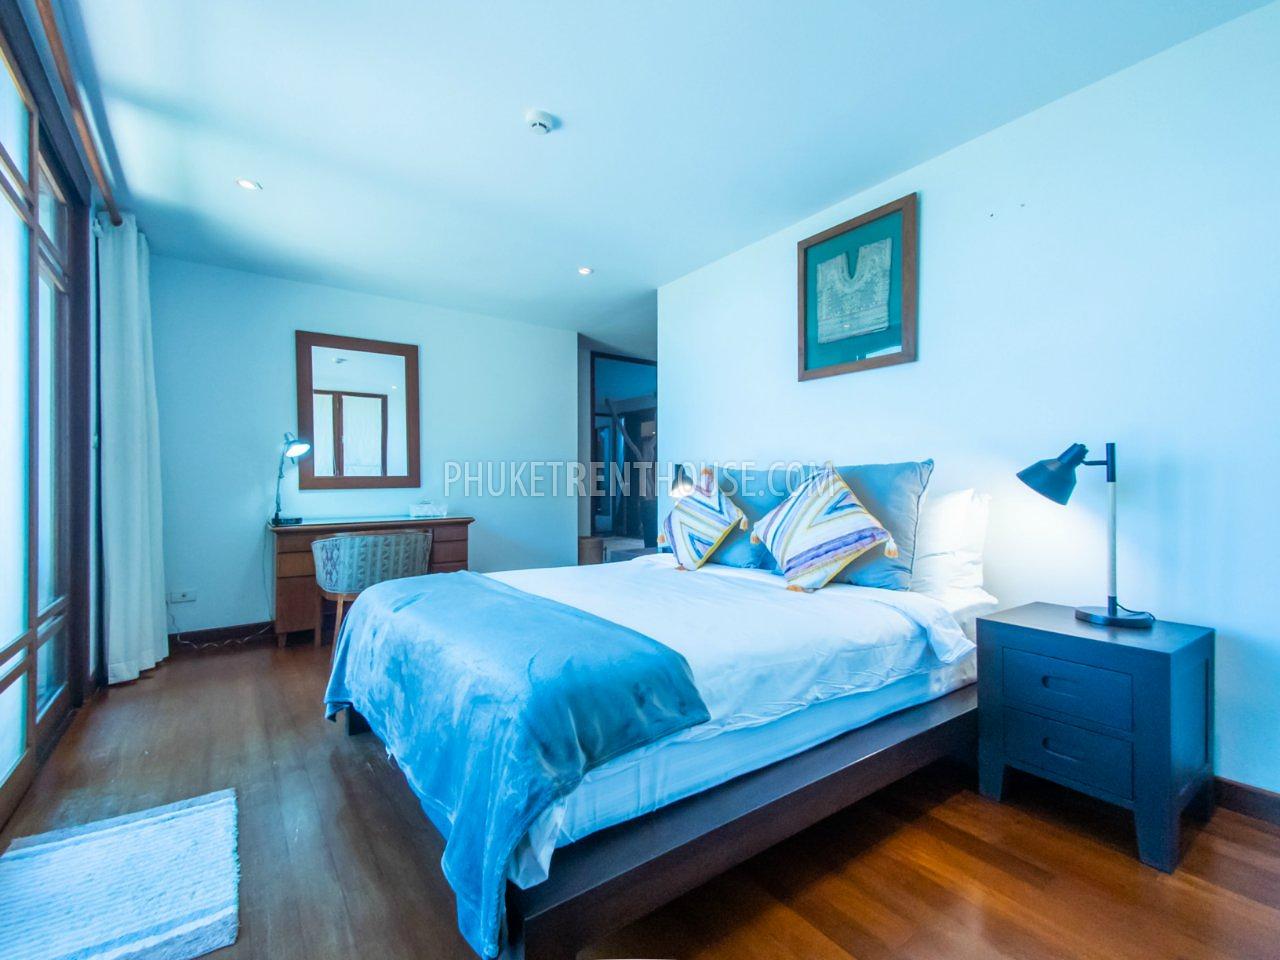 SUR20869: Incredible luxury Villa with 5 Bedroom in Surin. Photo #56